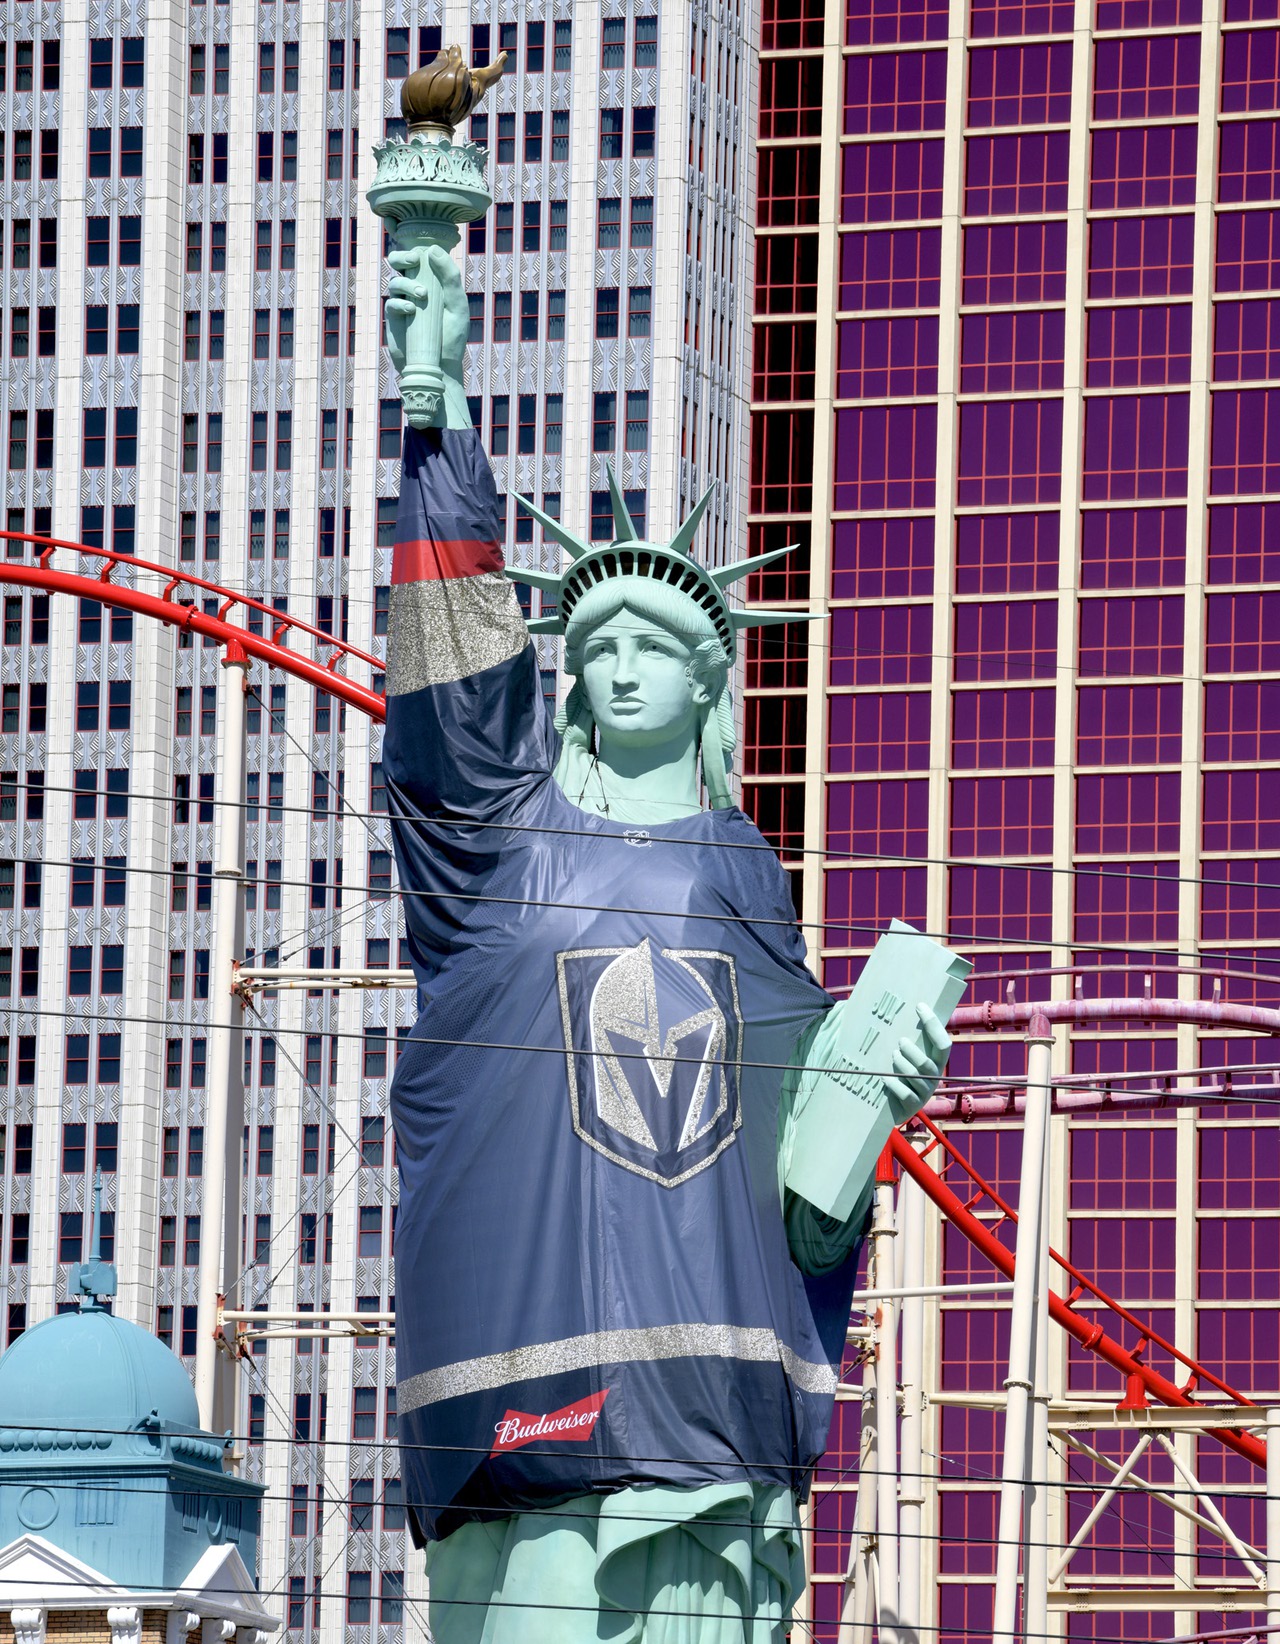 Statue of Liberty is a Vegas Golden Knights Fan - VegasChanges